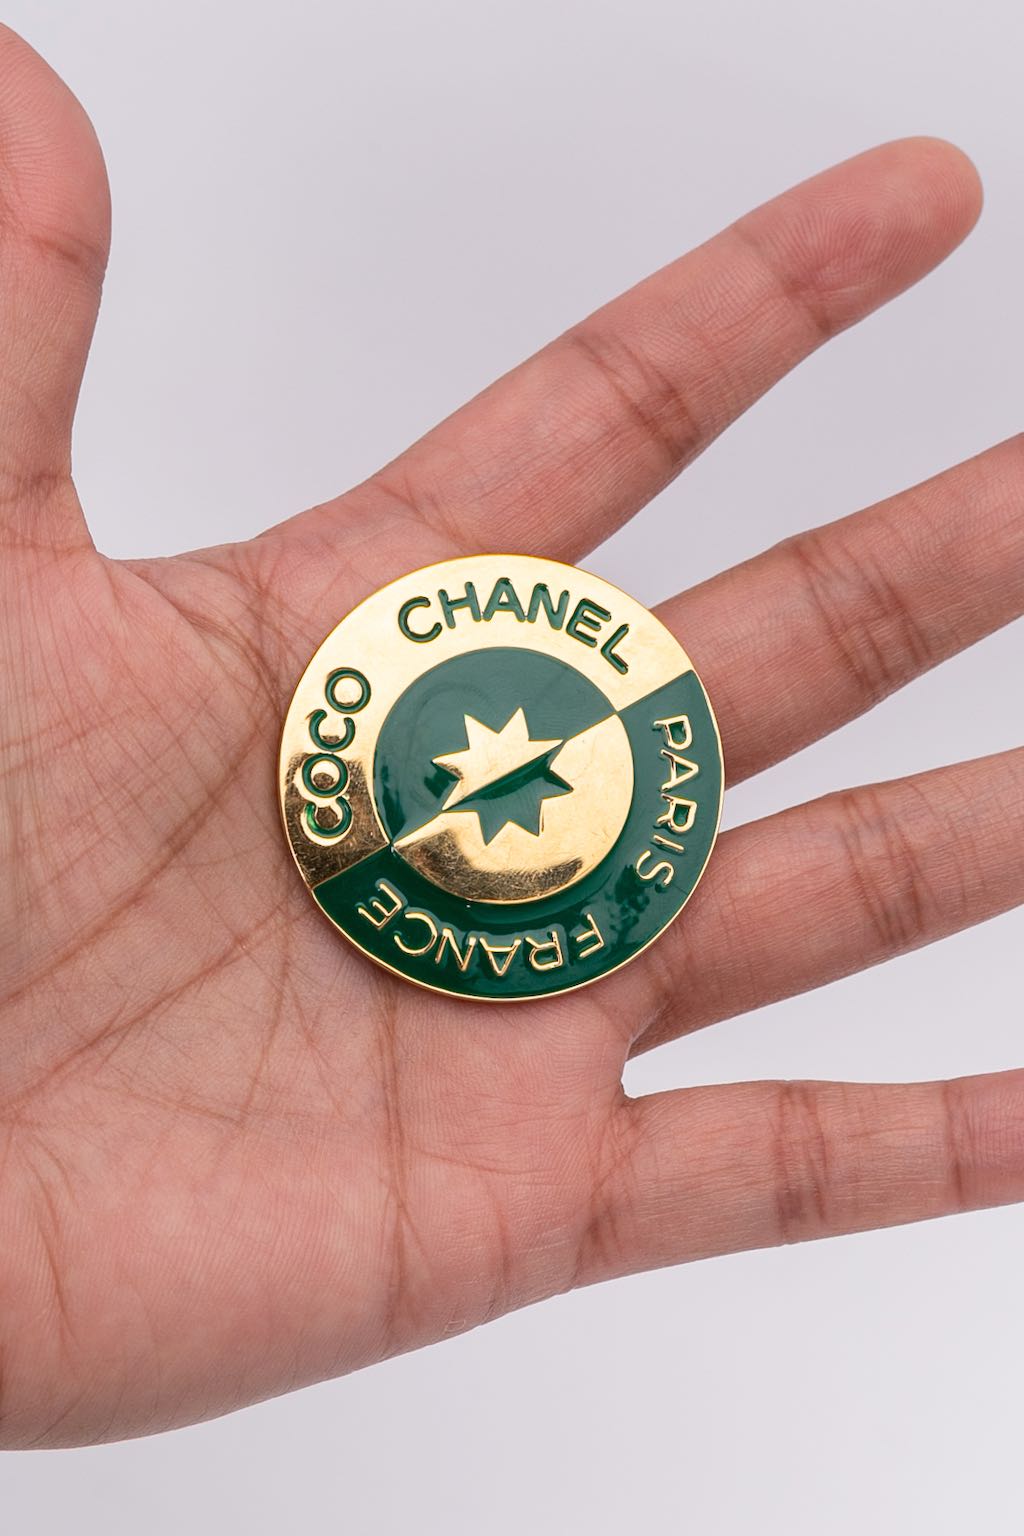 Chanel enamelled brooch